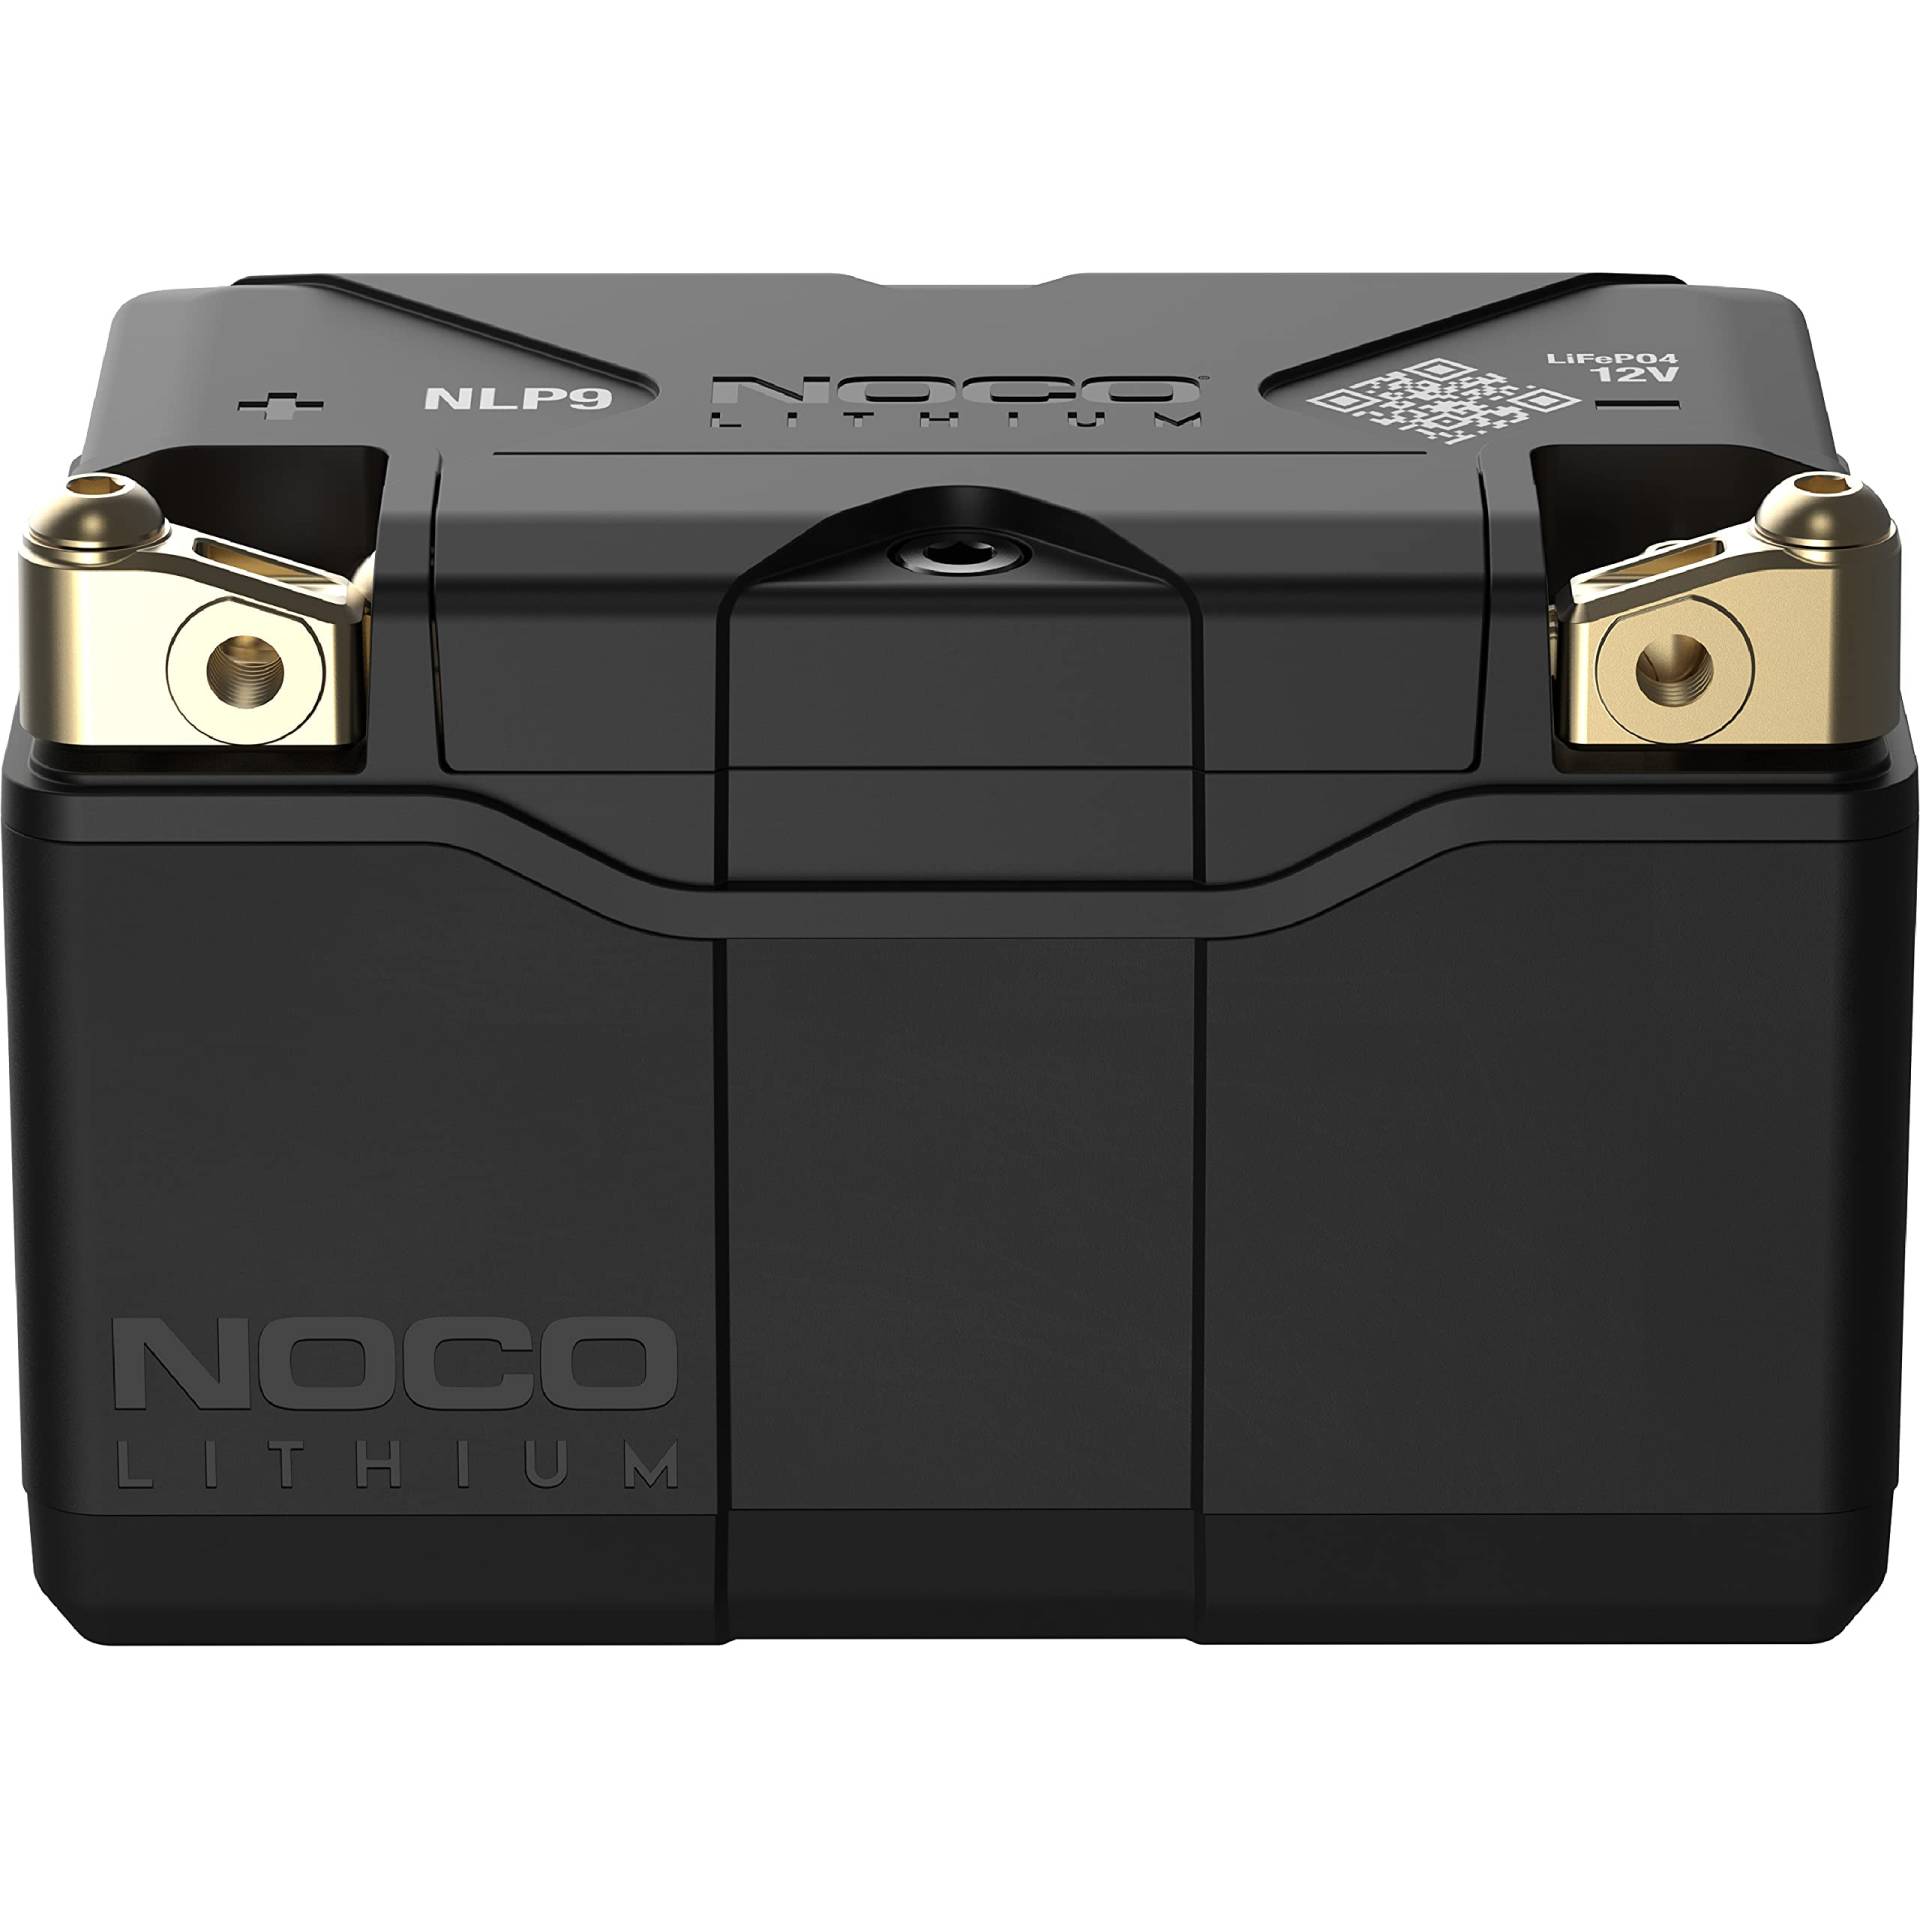 NOCO Lithium NLP9, 400A Powersports-Batterie, 12V 3Ah Litium-Ionen-Batterie für Motorräder, Quads, UTVs, Jet-Skis, Roller, Schneemobile und Rasenmäher von NOCO